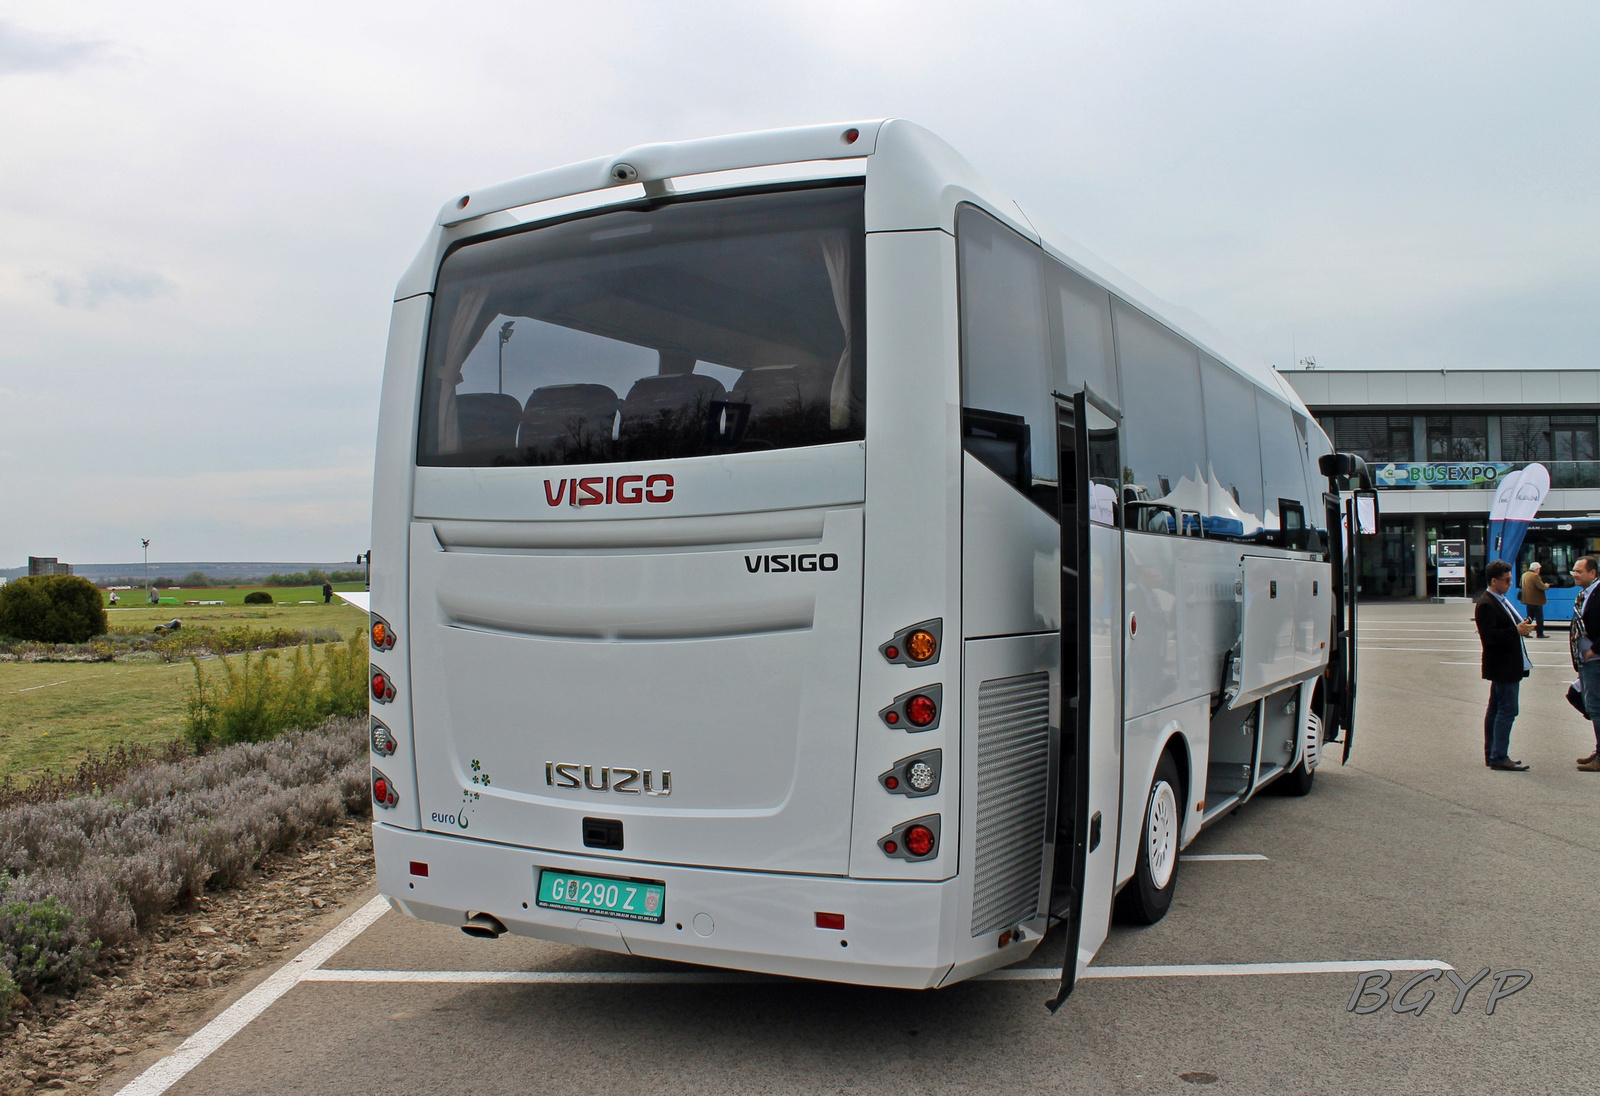 Isuzu Visigo (G-290 Z)